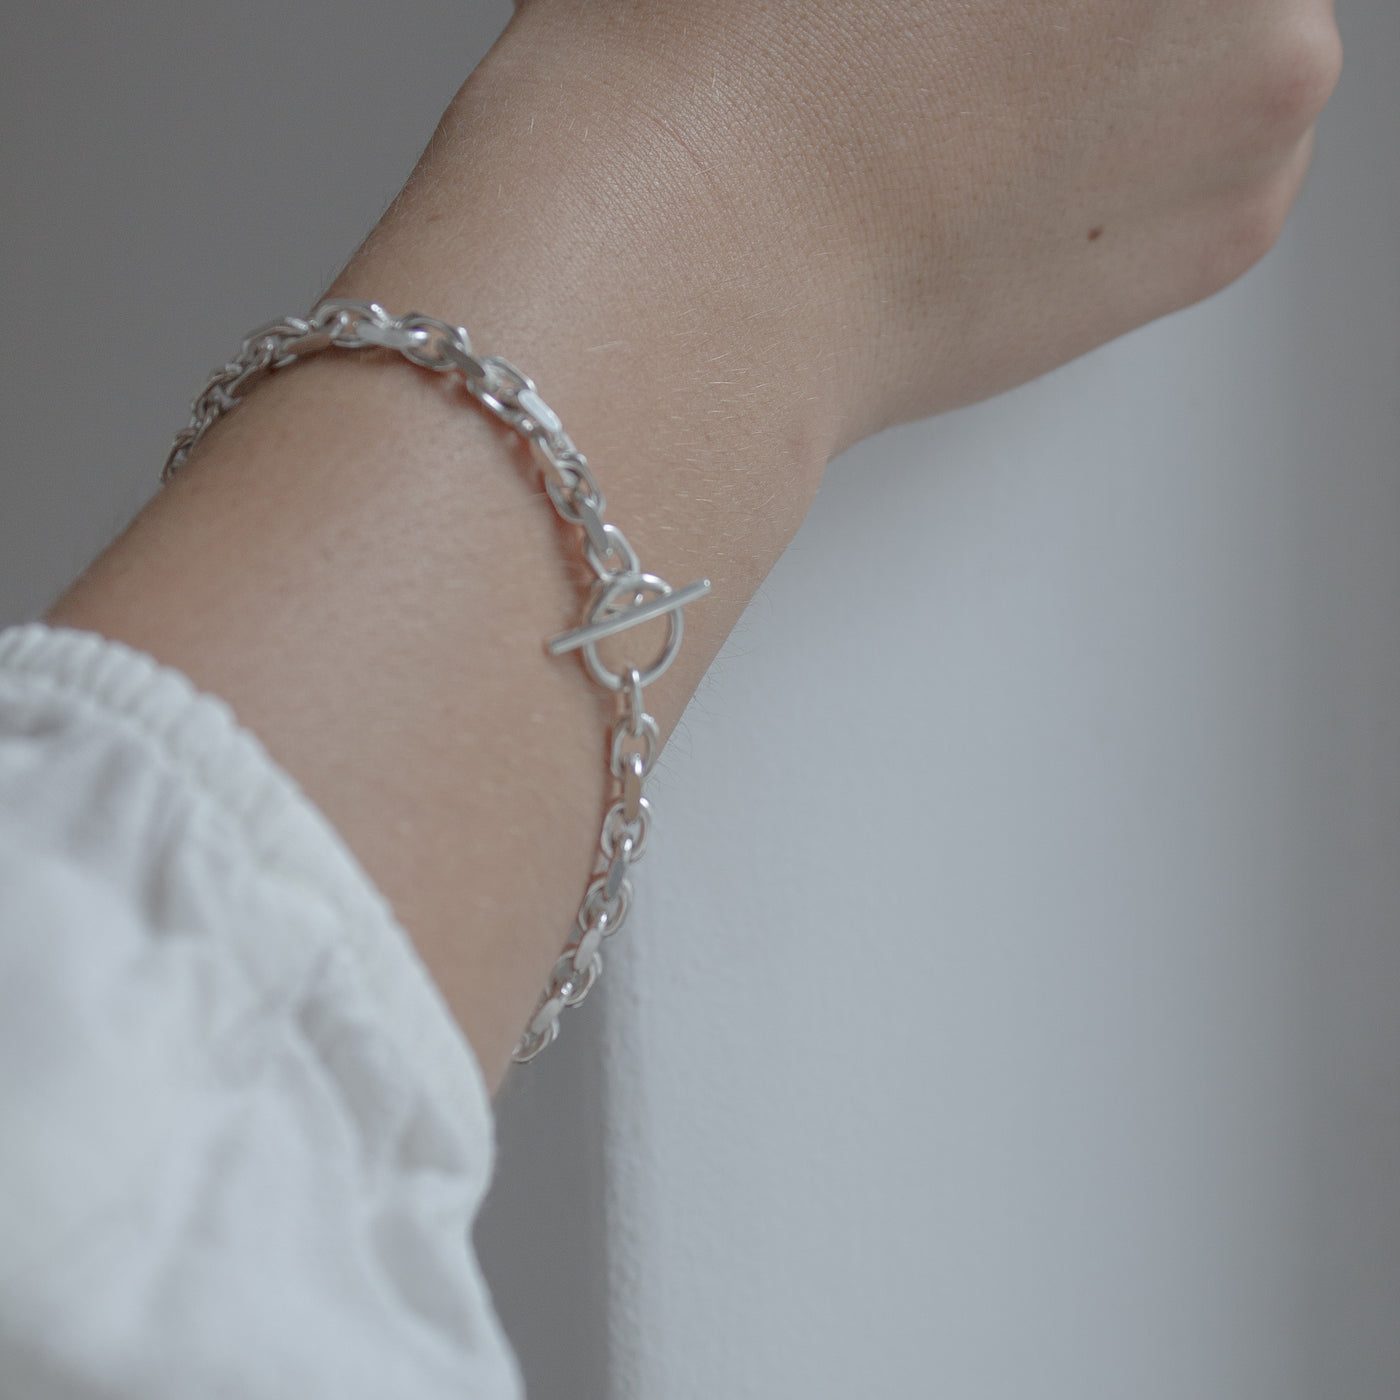 VIKJA // Sterling silver bracelet with coarse links